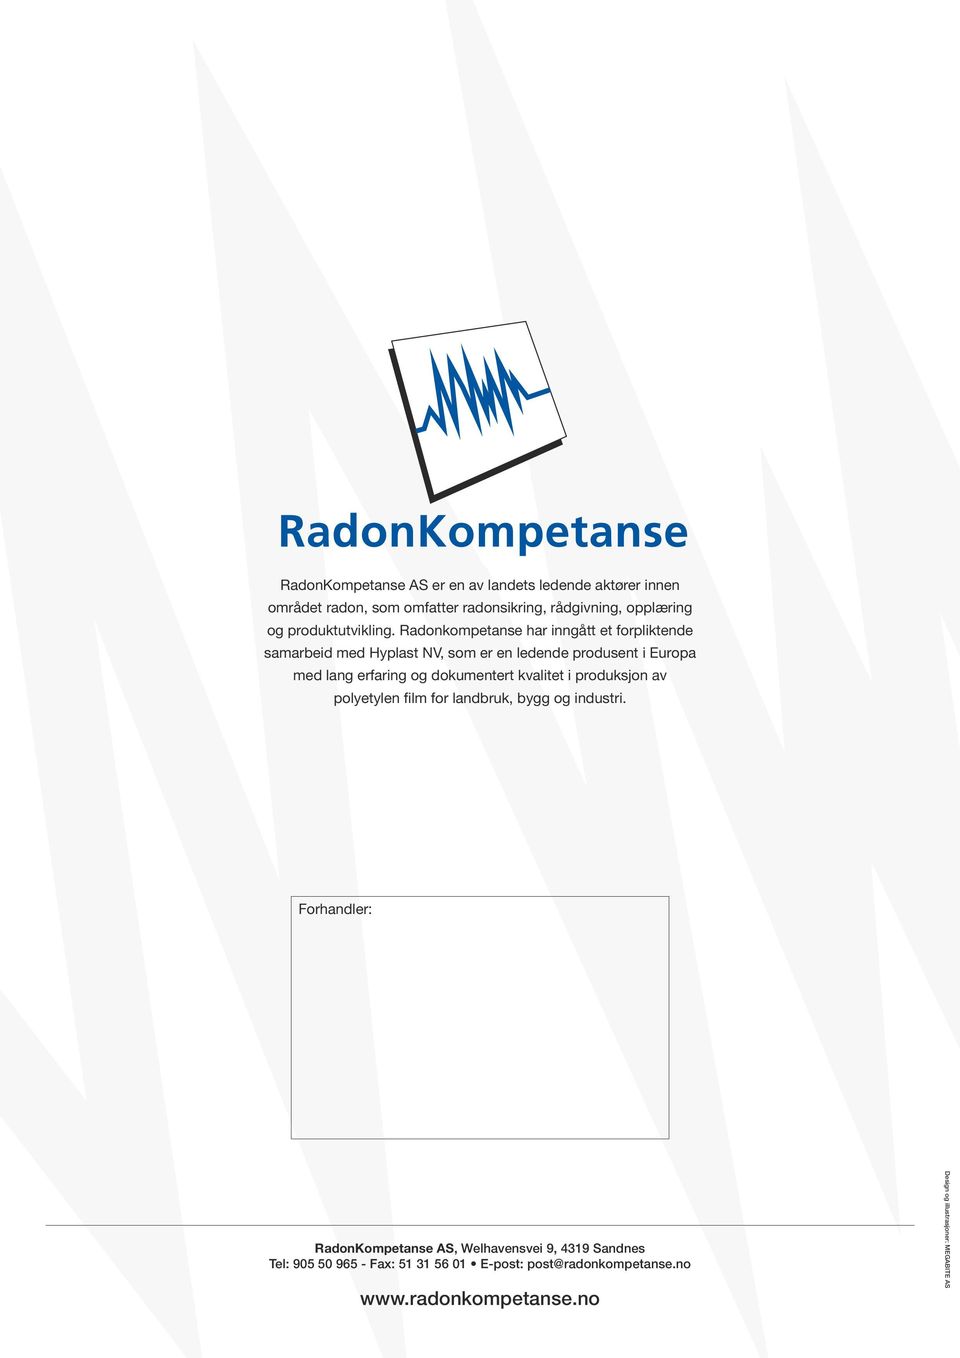 Radonkompetanse har inngått et forpliktende samarbeid med Hyplast NV, som er en ledende produsent i Europa med lang erfaring og